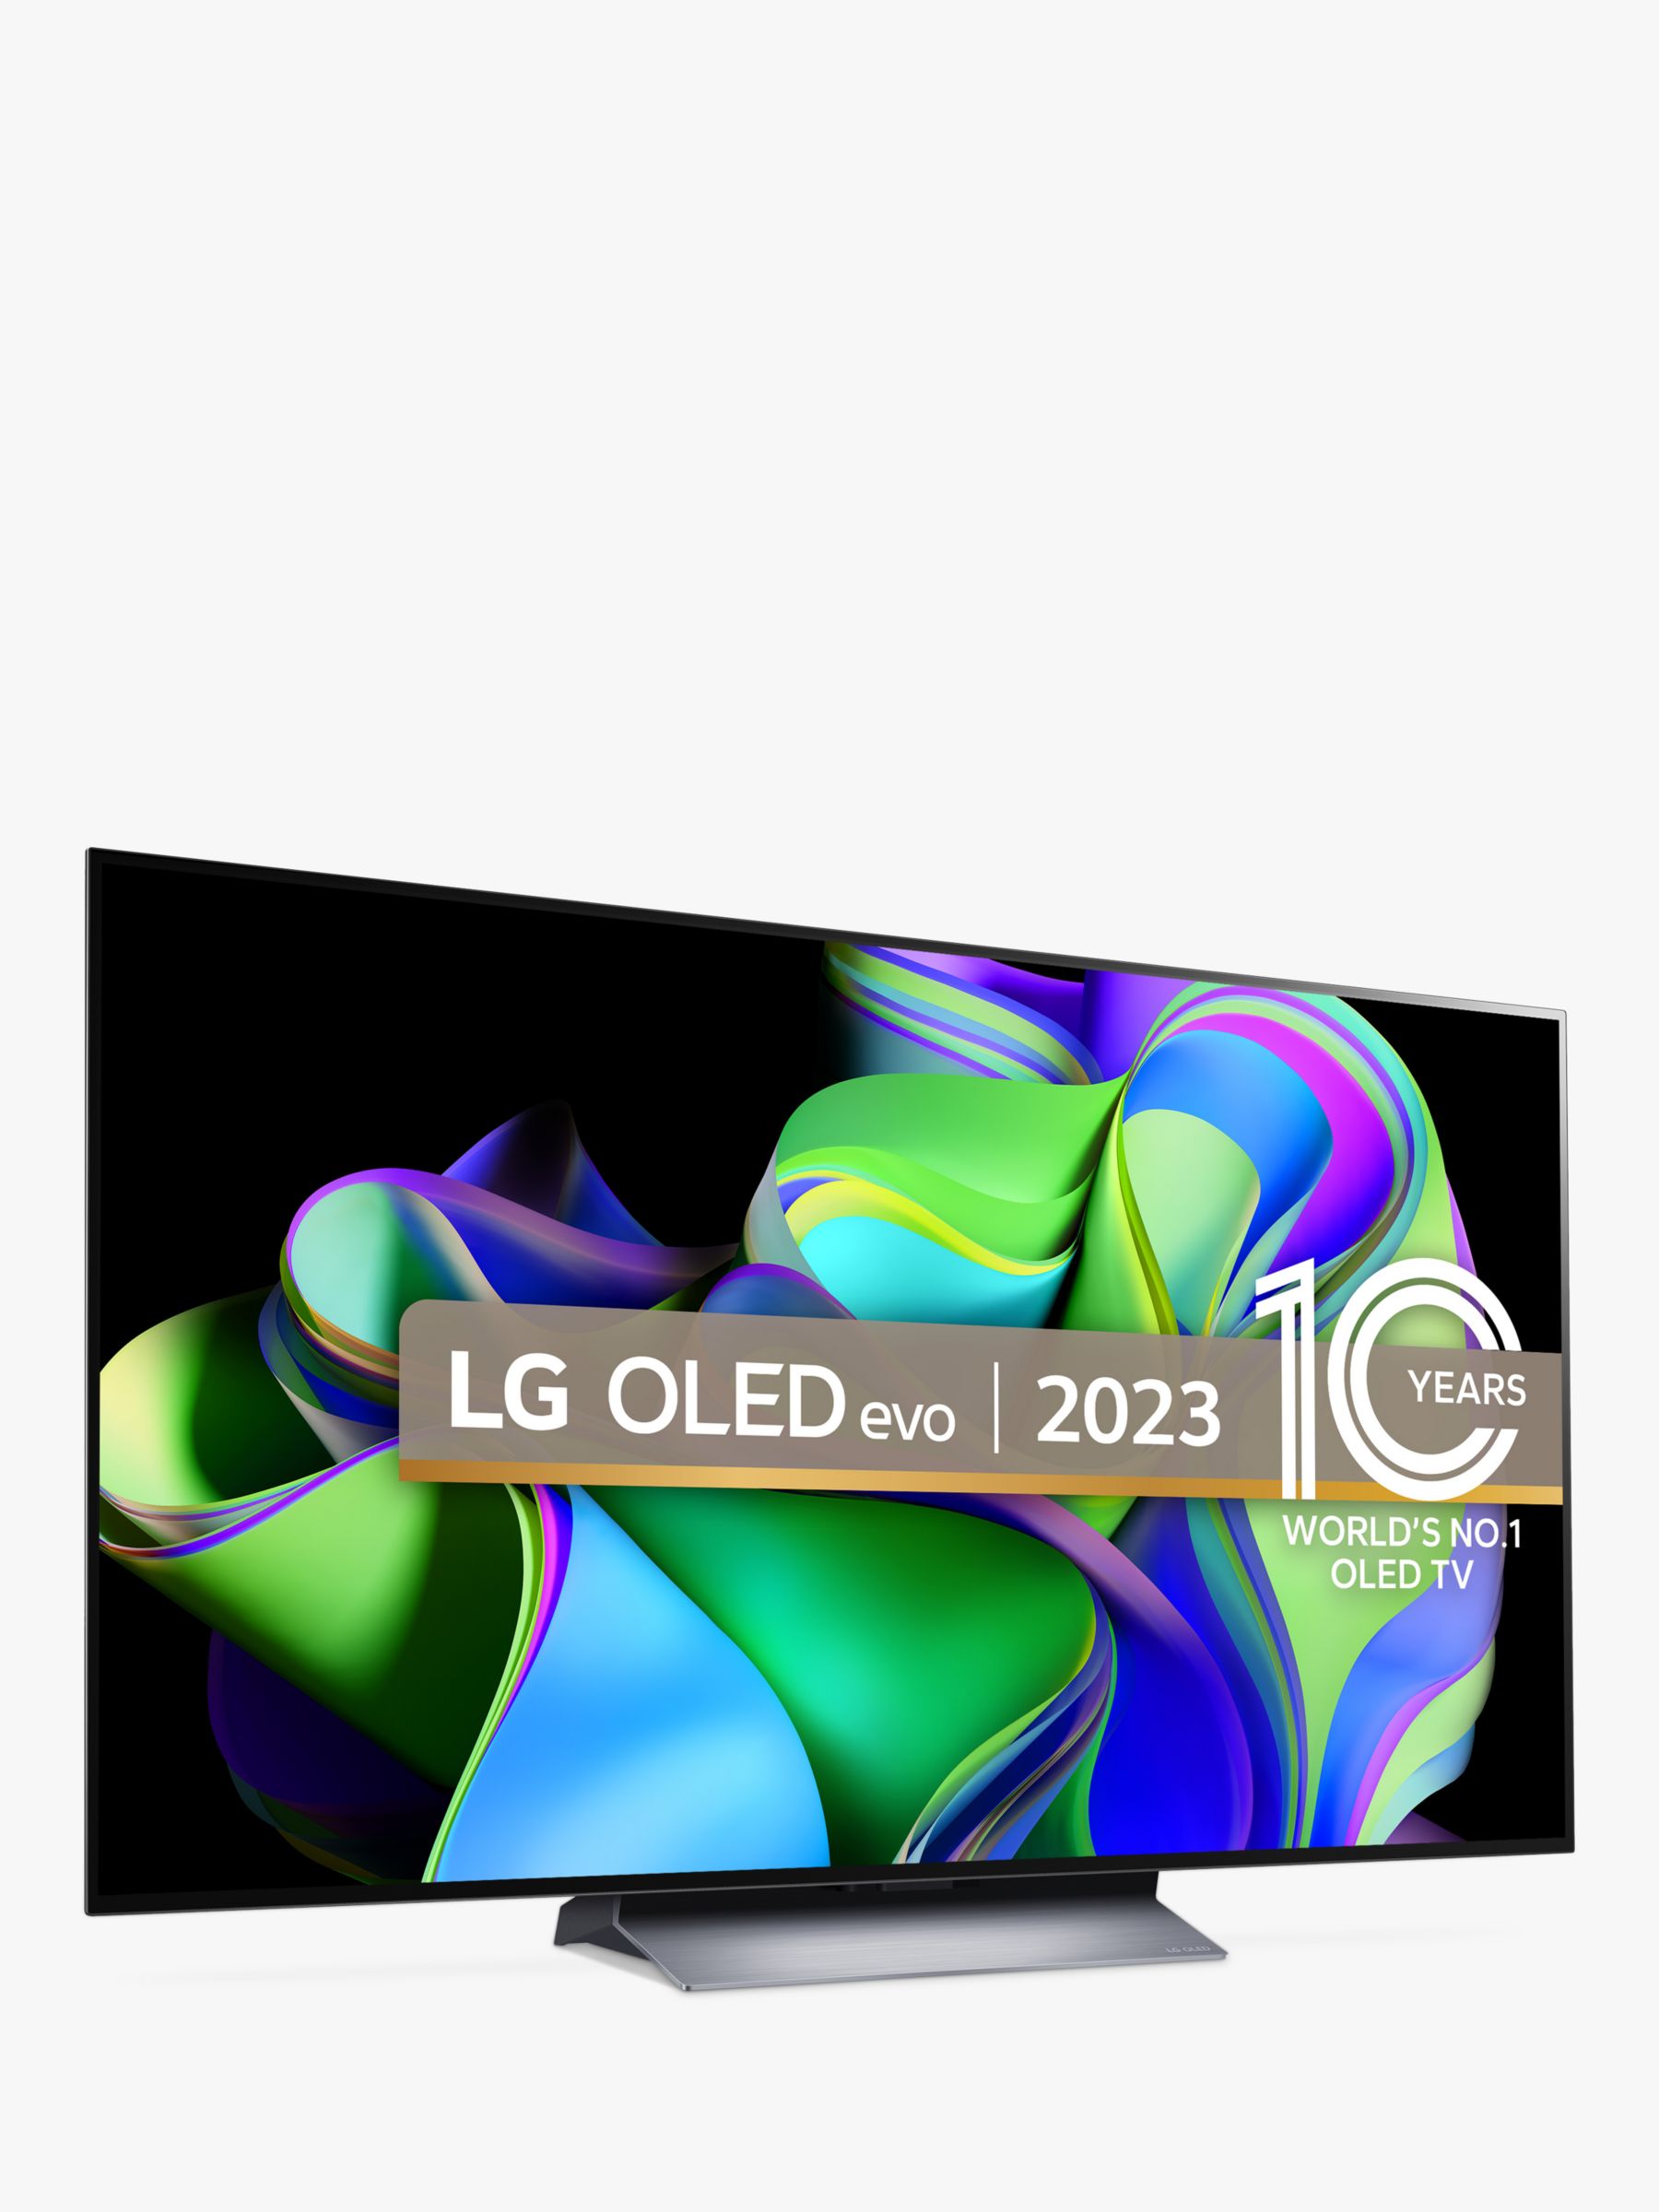 LG OLED C4 vs LG OLED C3: What's new in 2024?